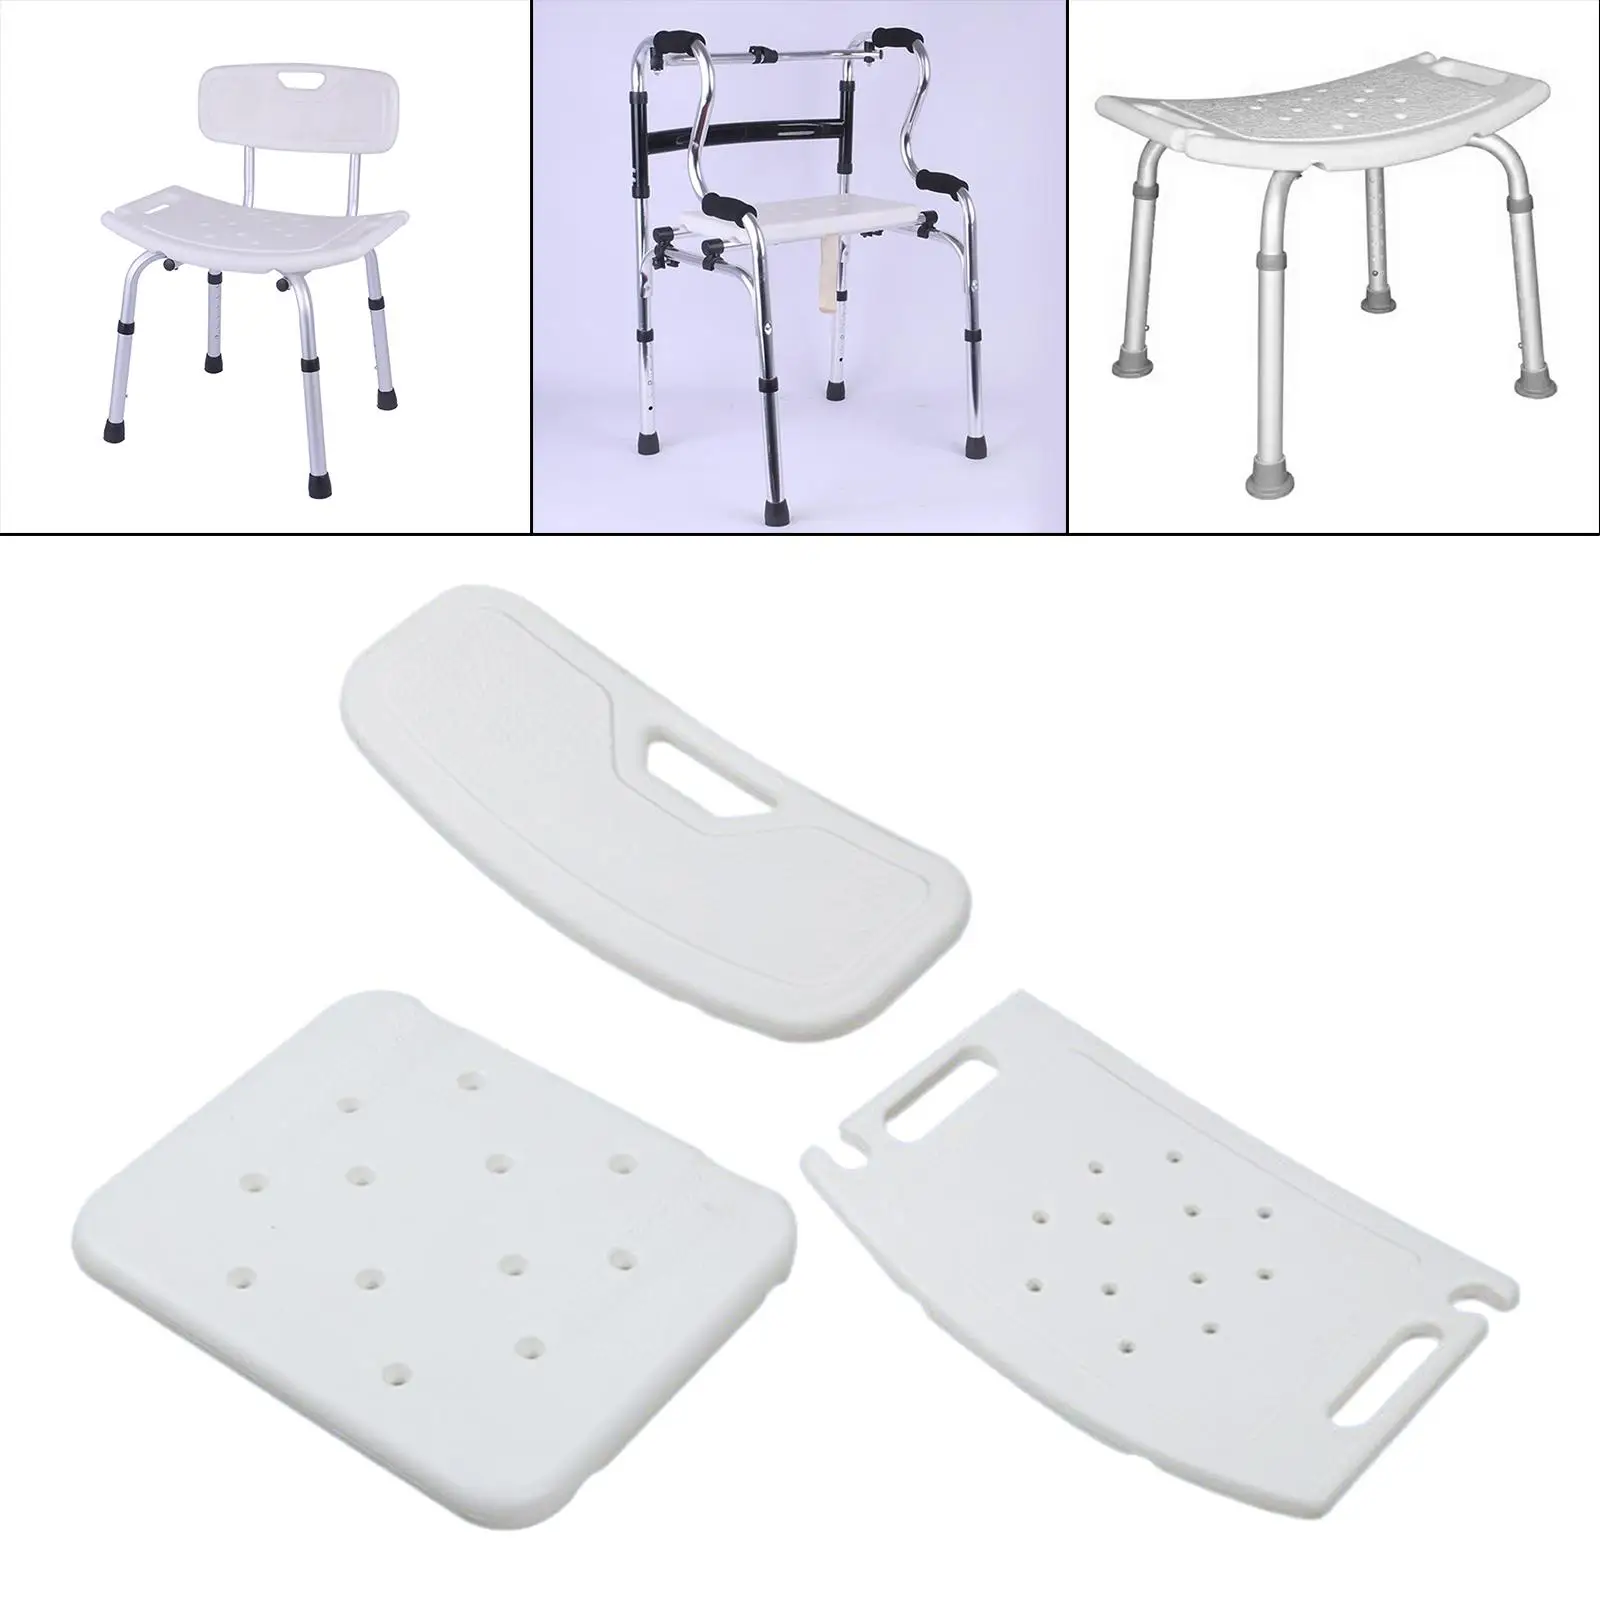 Shower Chair Accessories Non Slip for Shower Stool Bathroom Chair Bath Chair